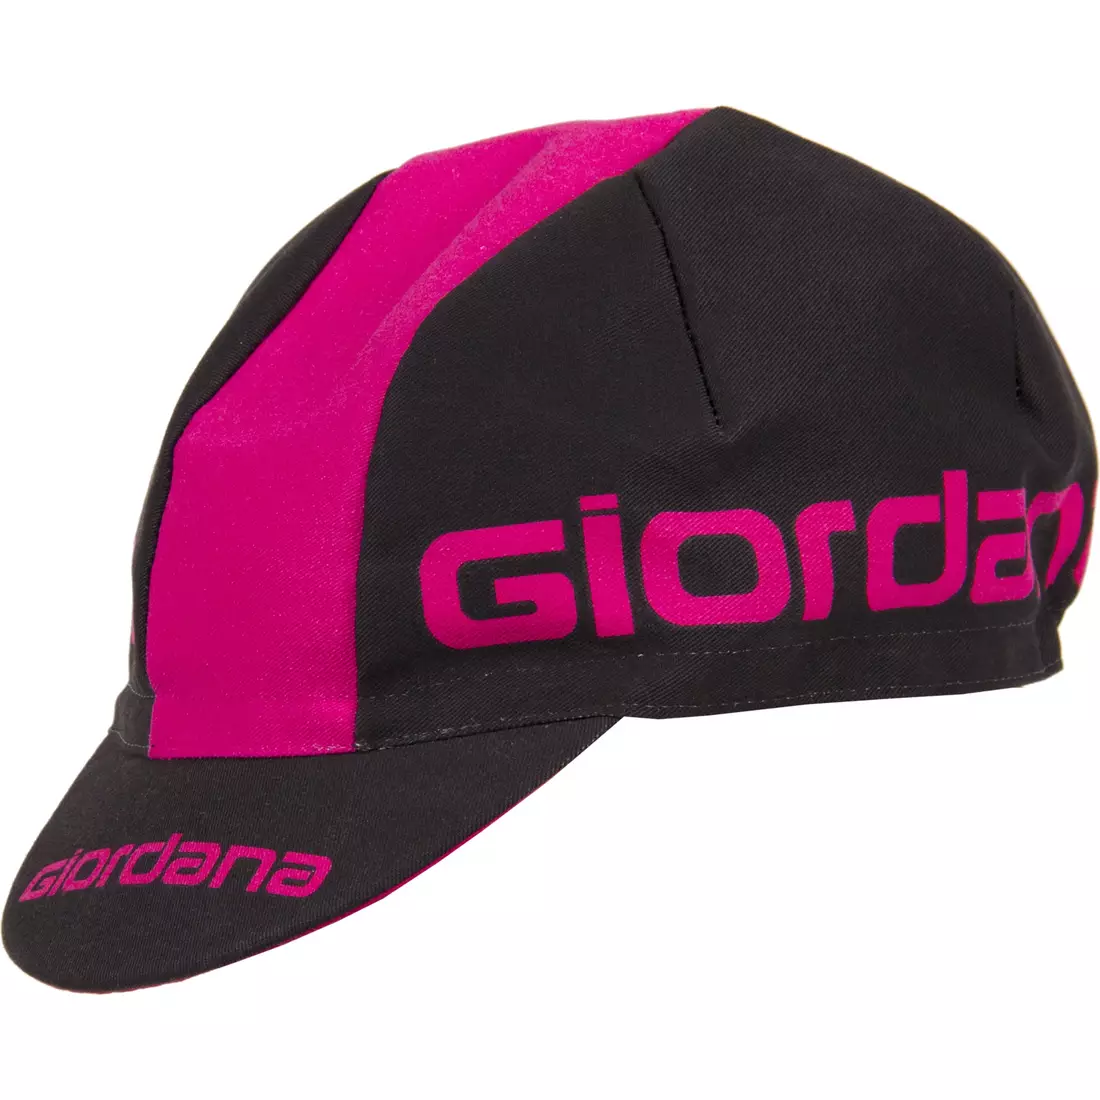 Șapcă de ciclism GIORDANA SS18 - Logo Giordana - Negru/Roz GI-S5-COCA-GIOR-BKPK mărime unica